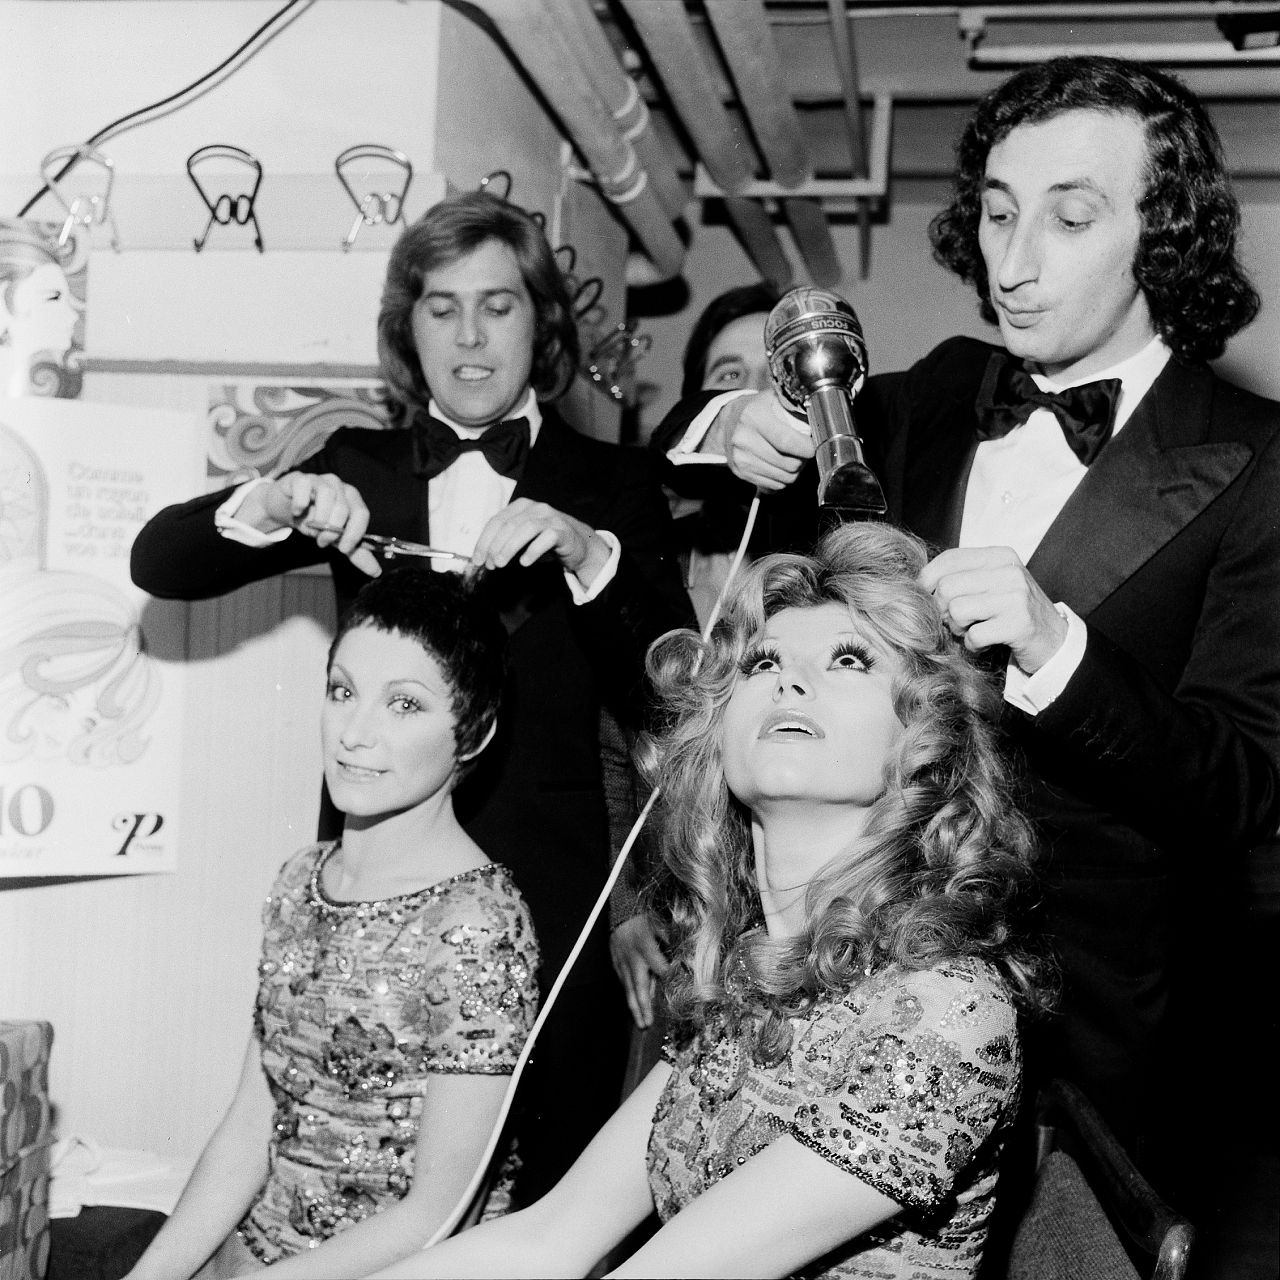 La blague Ricchi e Poveri dans la salle de maquillage du XXIIIe Festival de Sanremo, 1973.